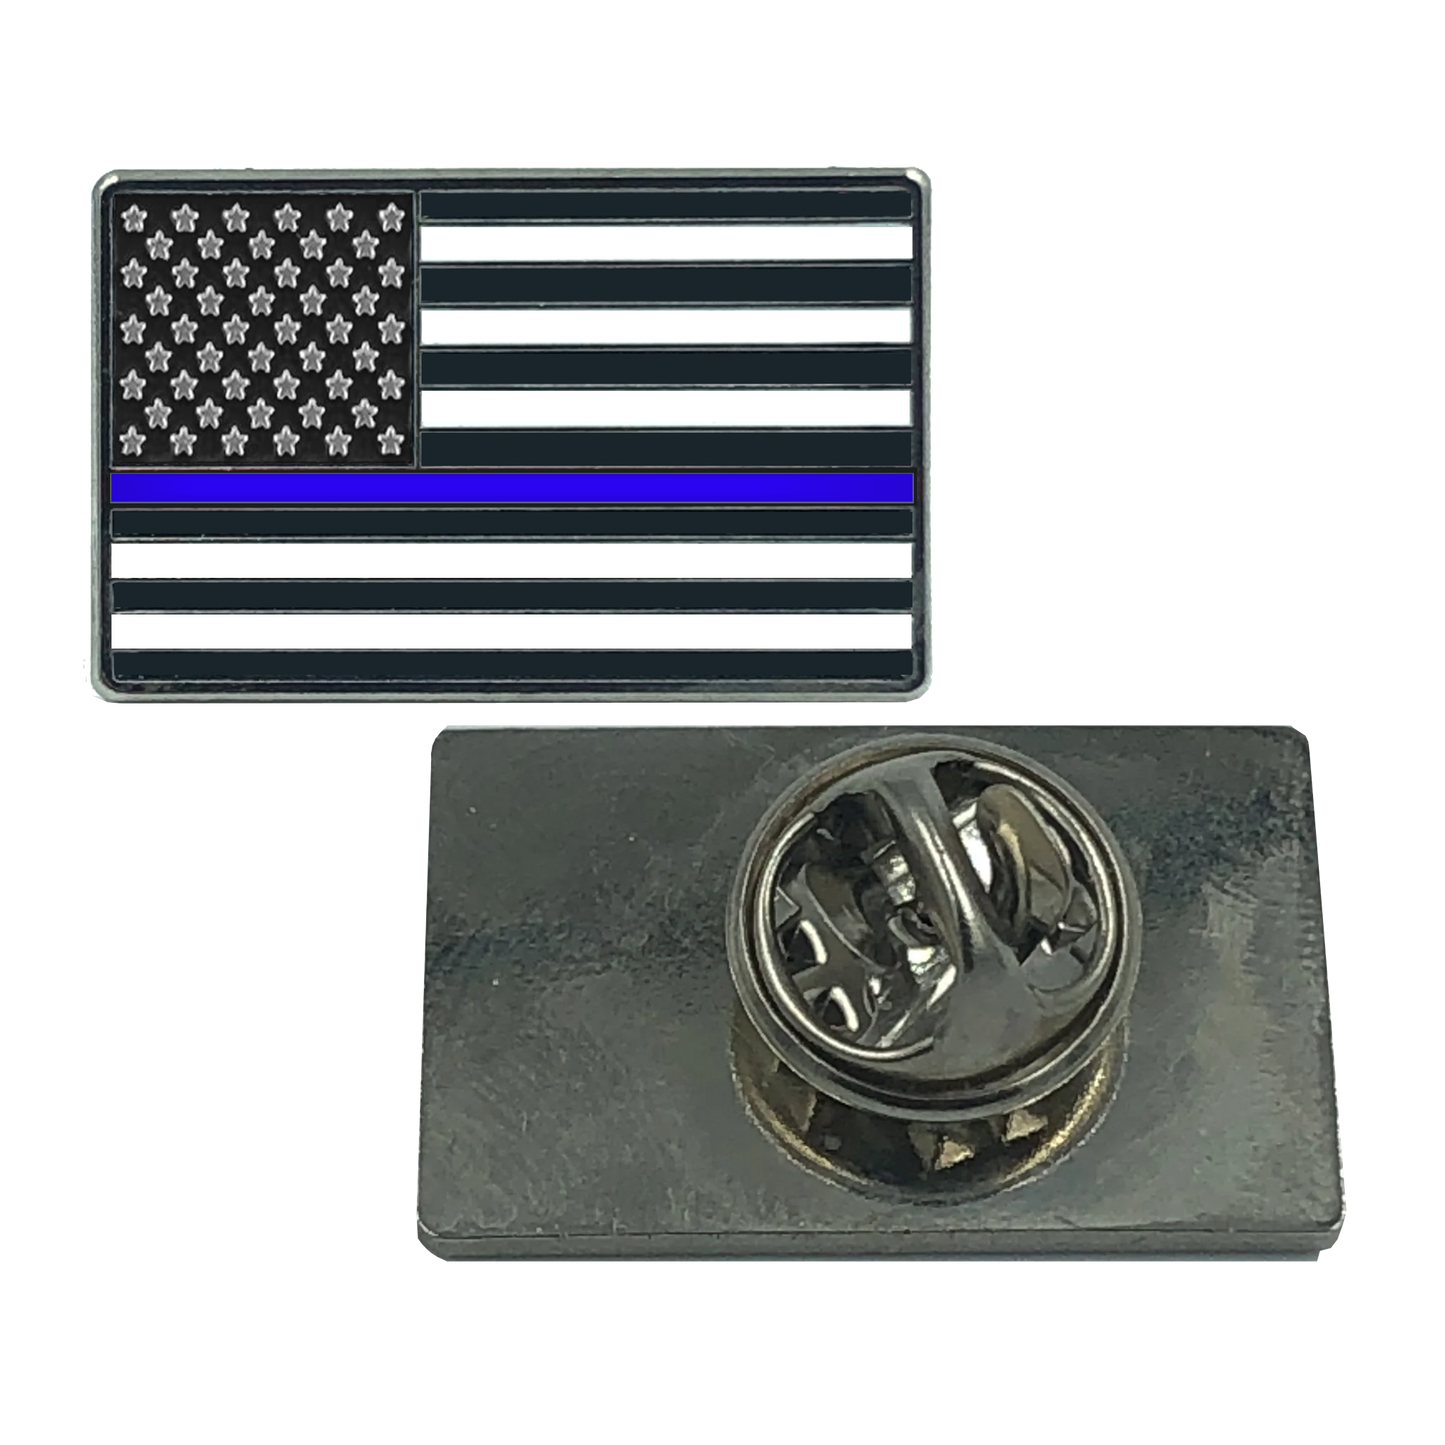 EL8-014 Thin Blue Line Flag Pin uniform Police Officer Police Department Law Enforcement CBP FAM FBI LAPD Chicago DEA ATF